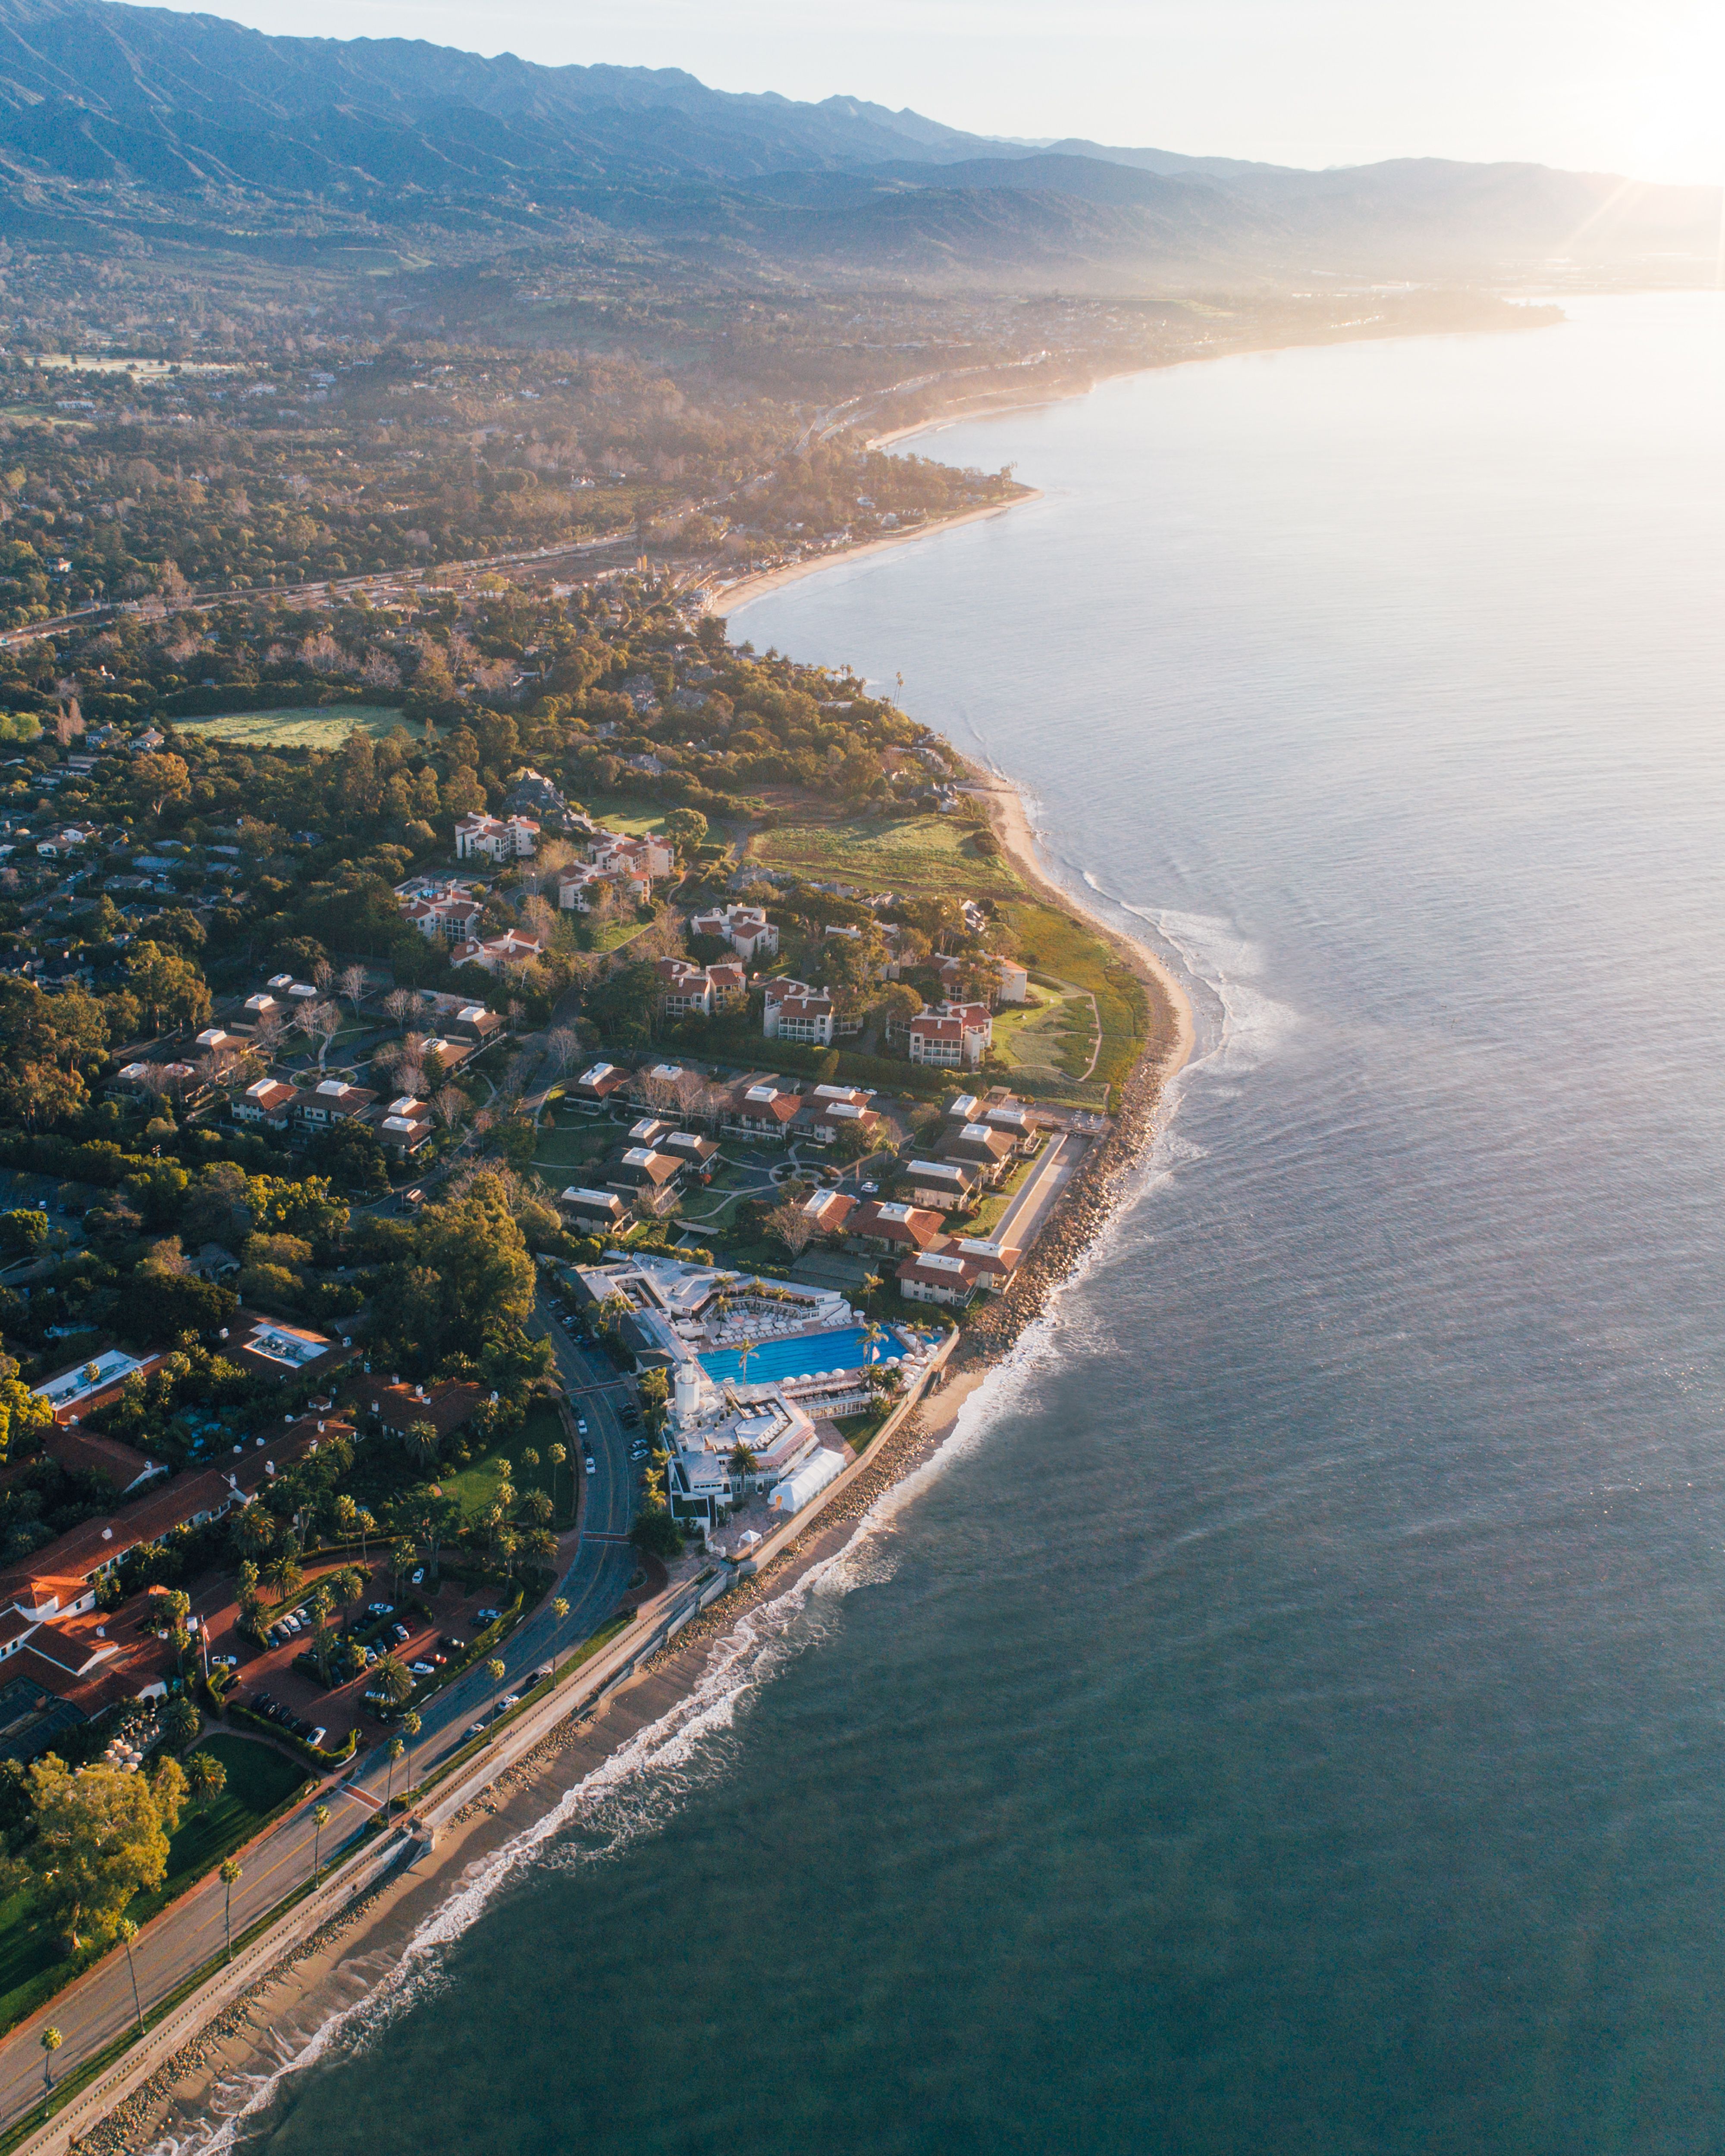 aerial shot of Santa Barbara coast and ocean